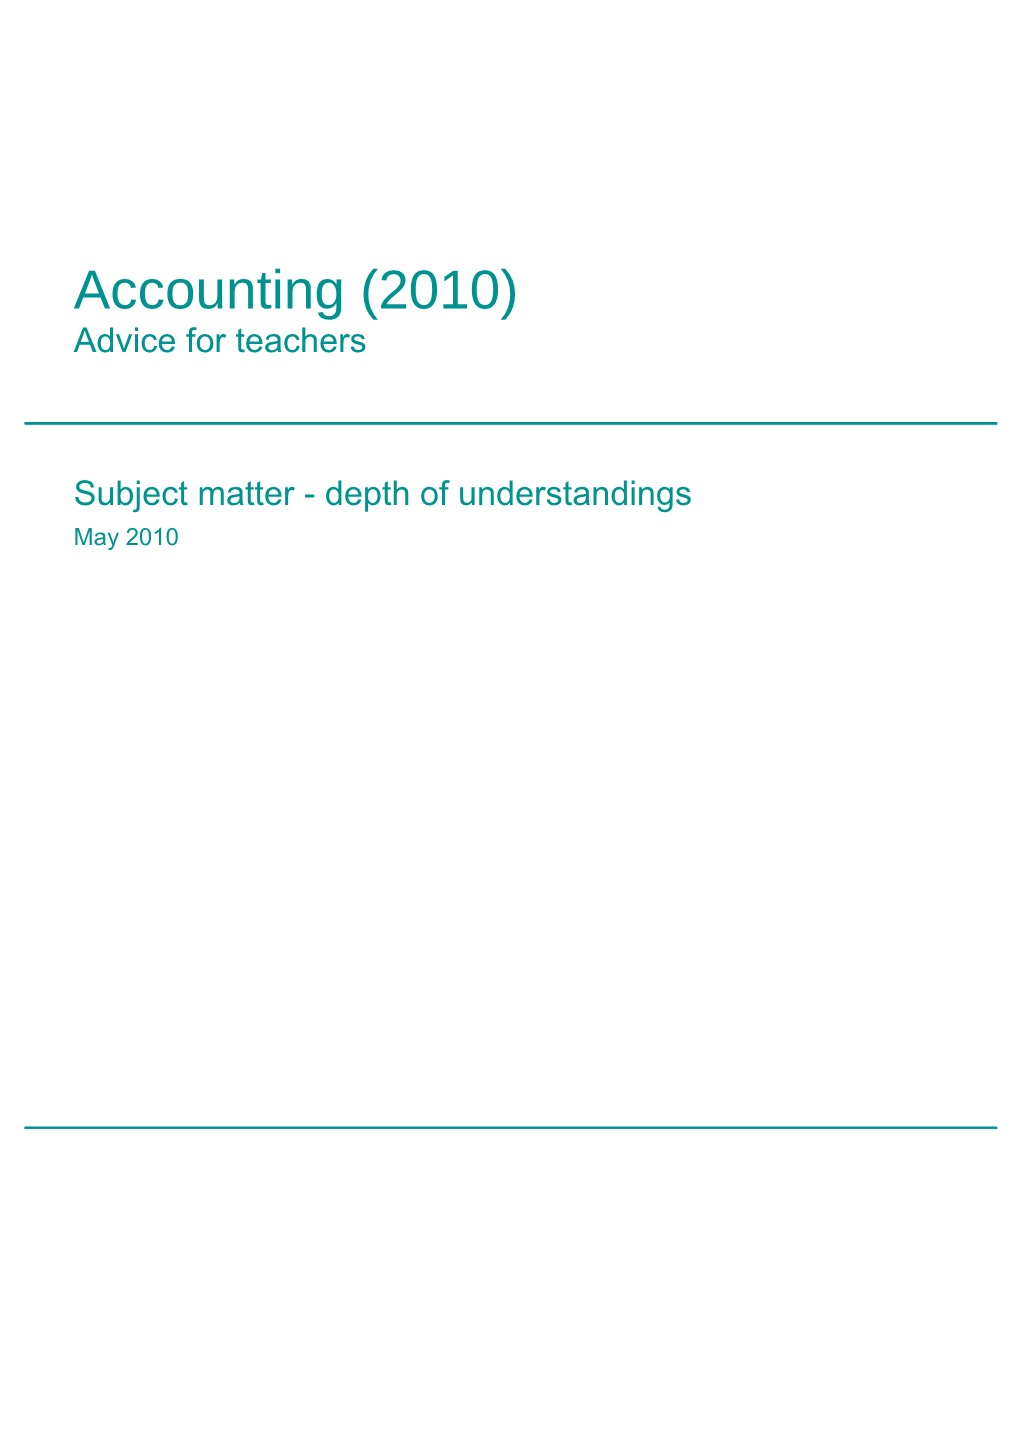 Accounting (2010) Advice for Teachers